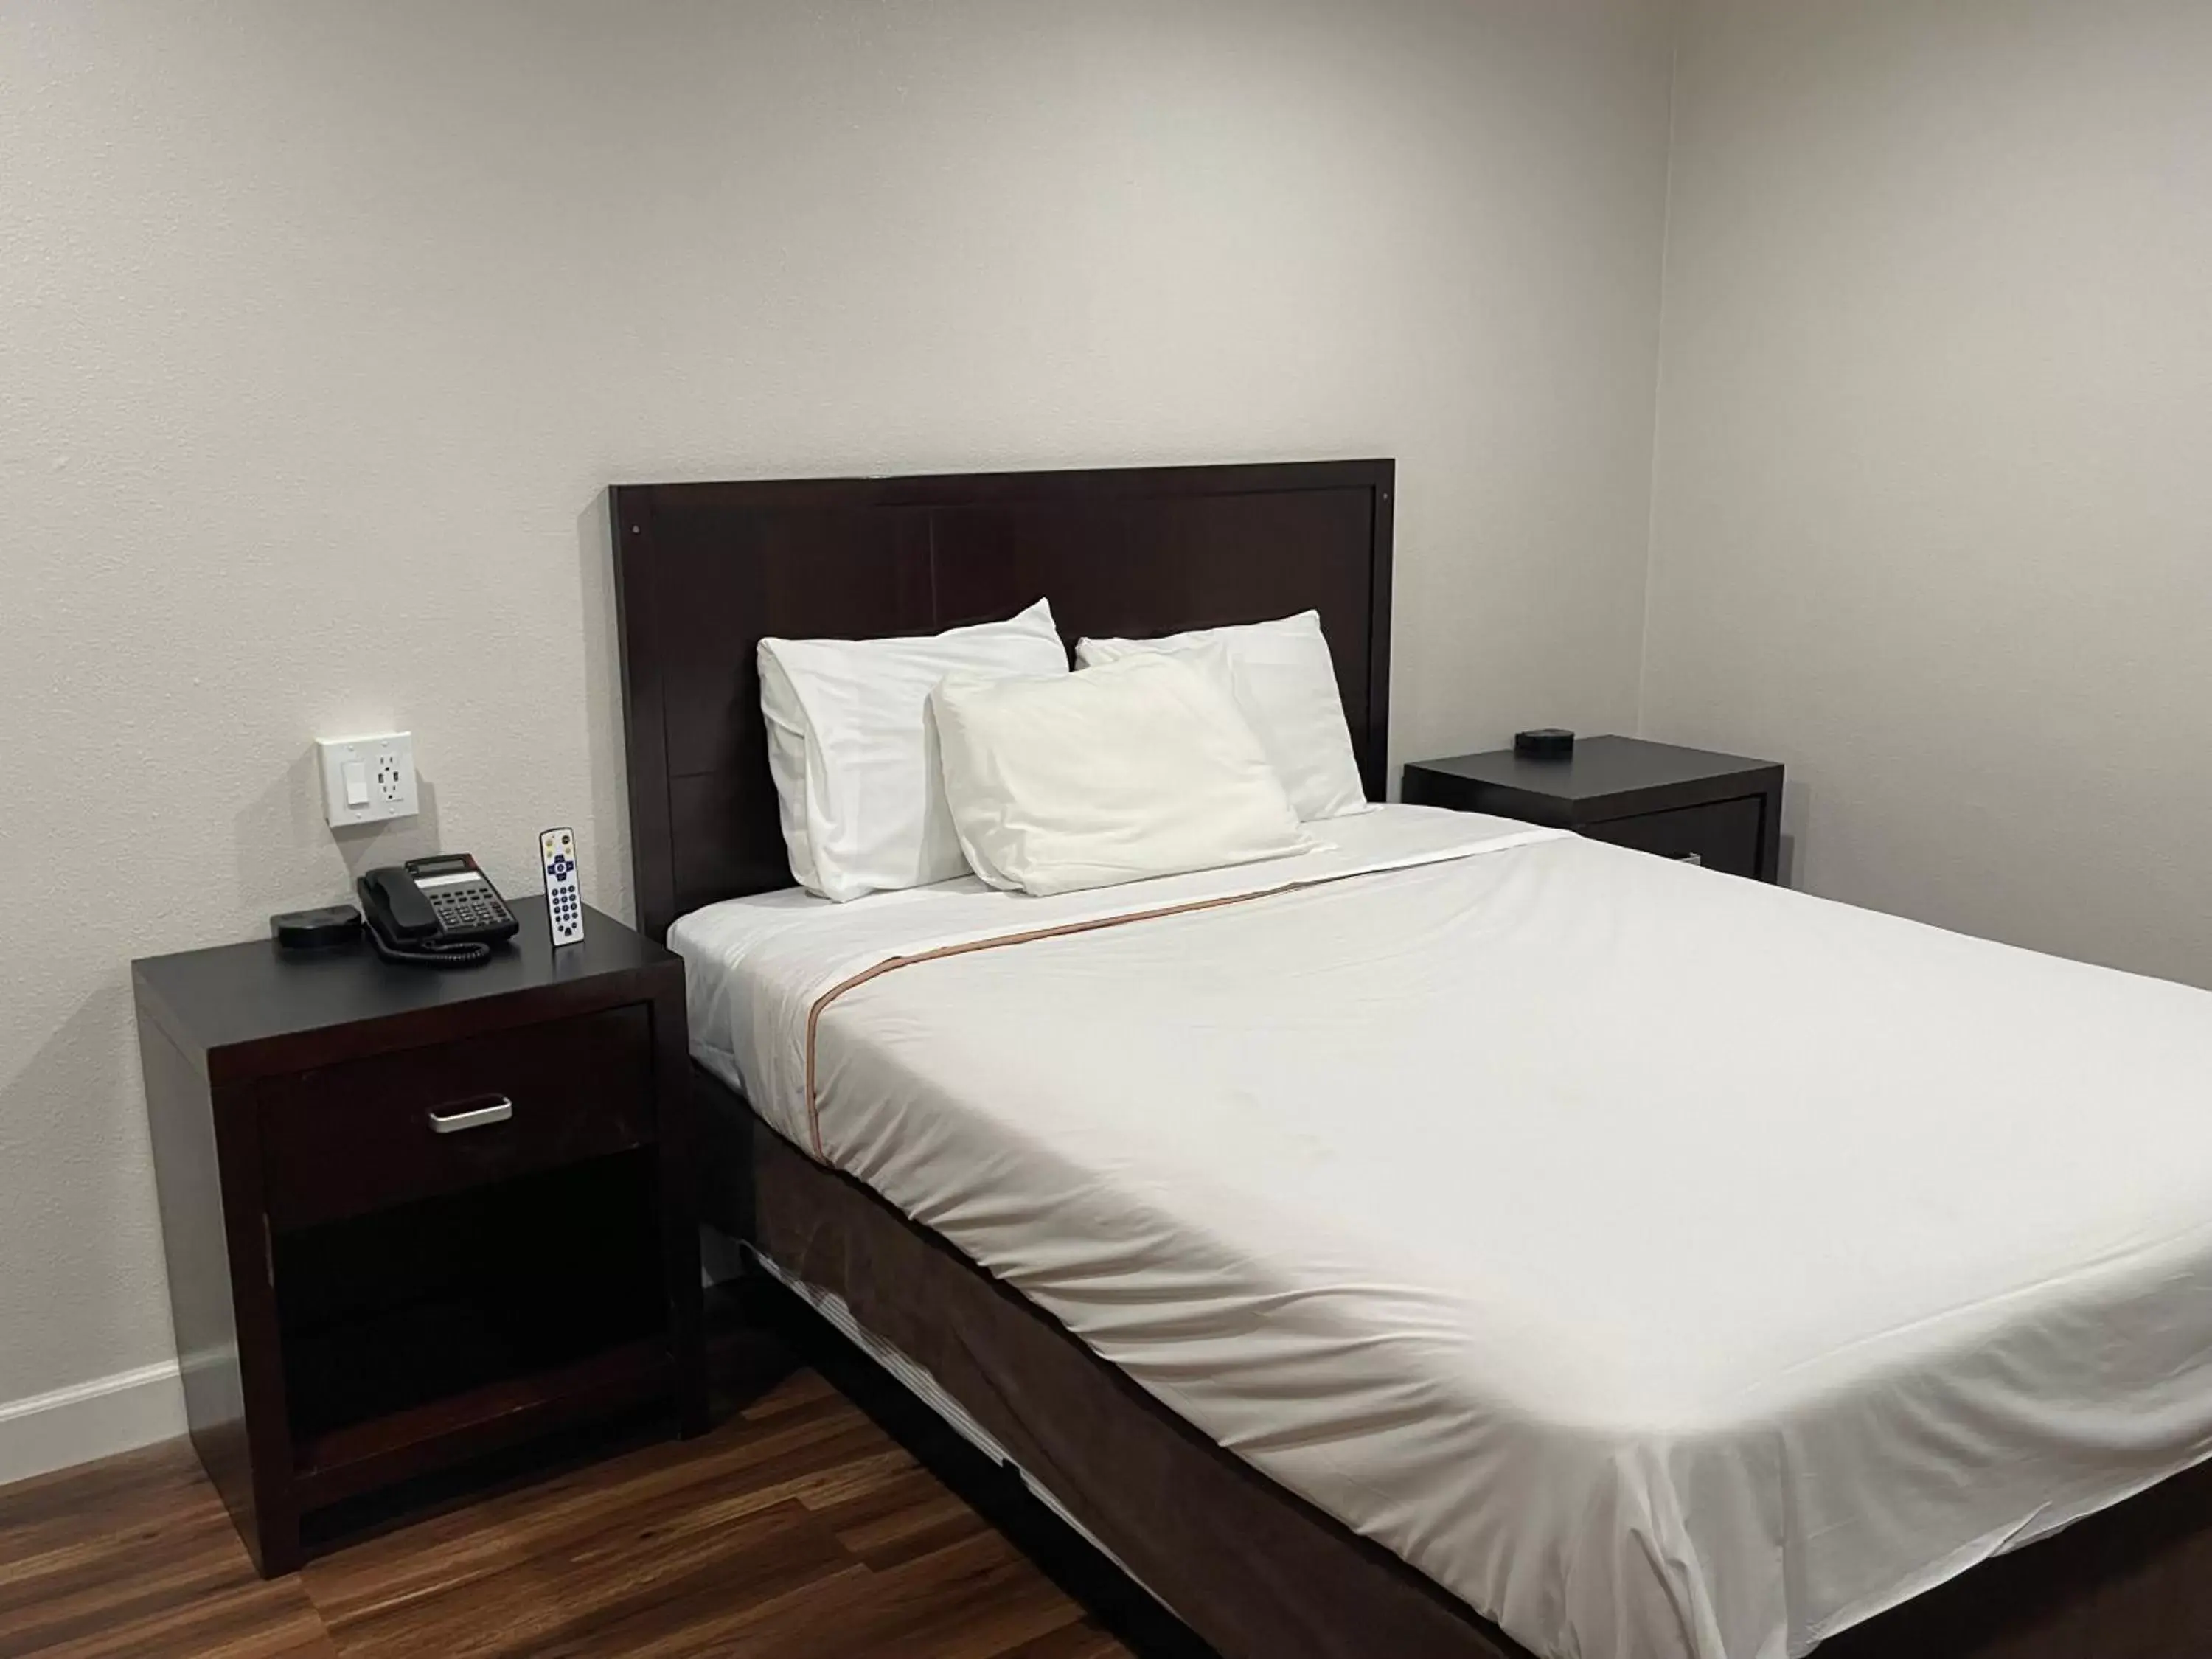 Bed in Lanai Motel